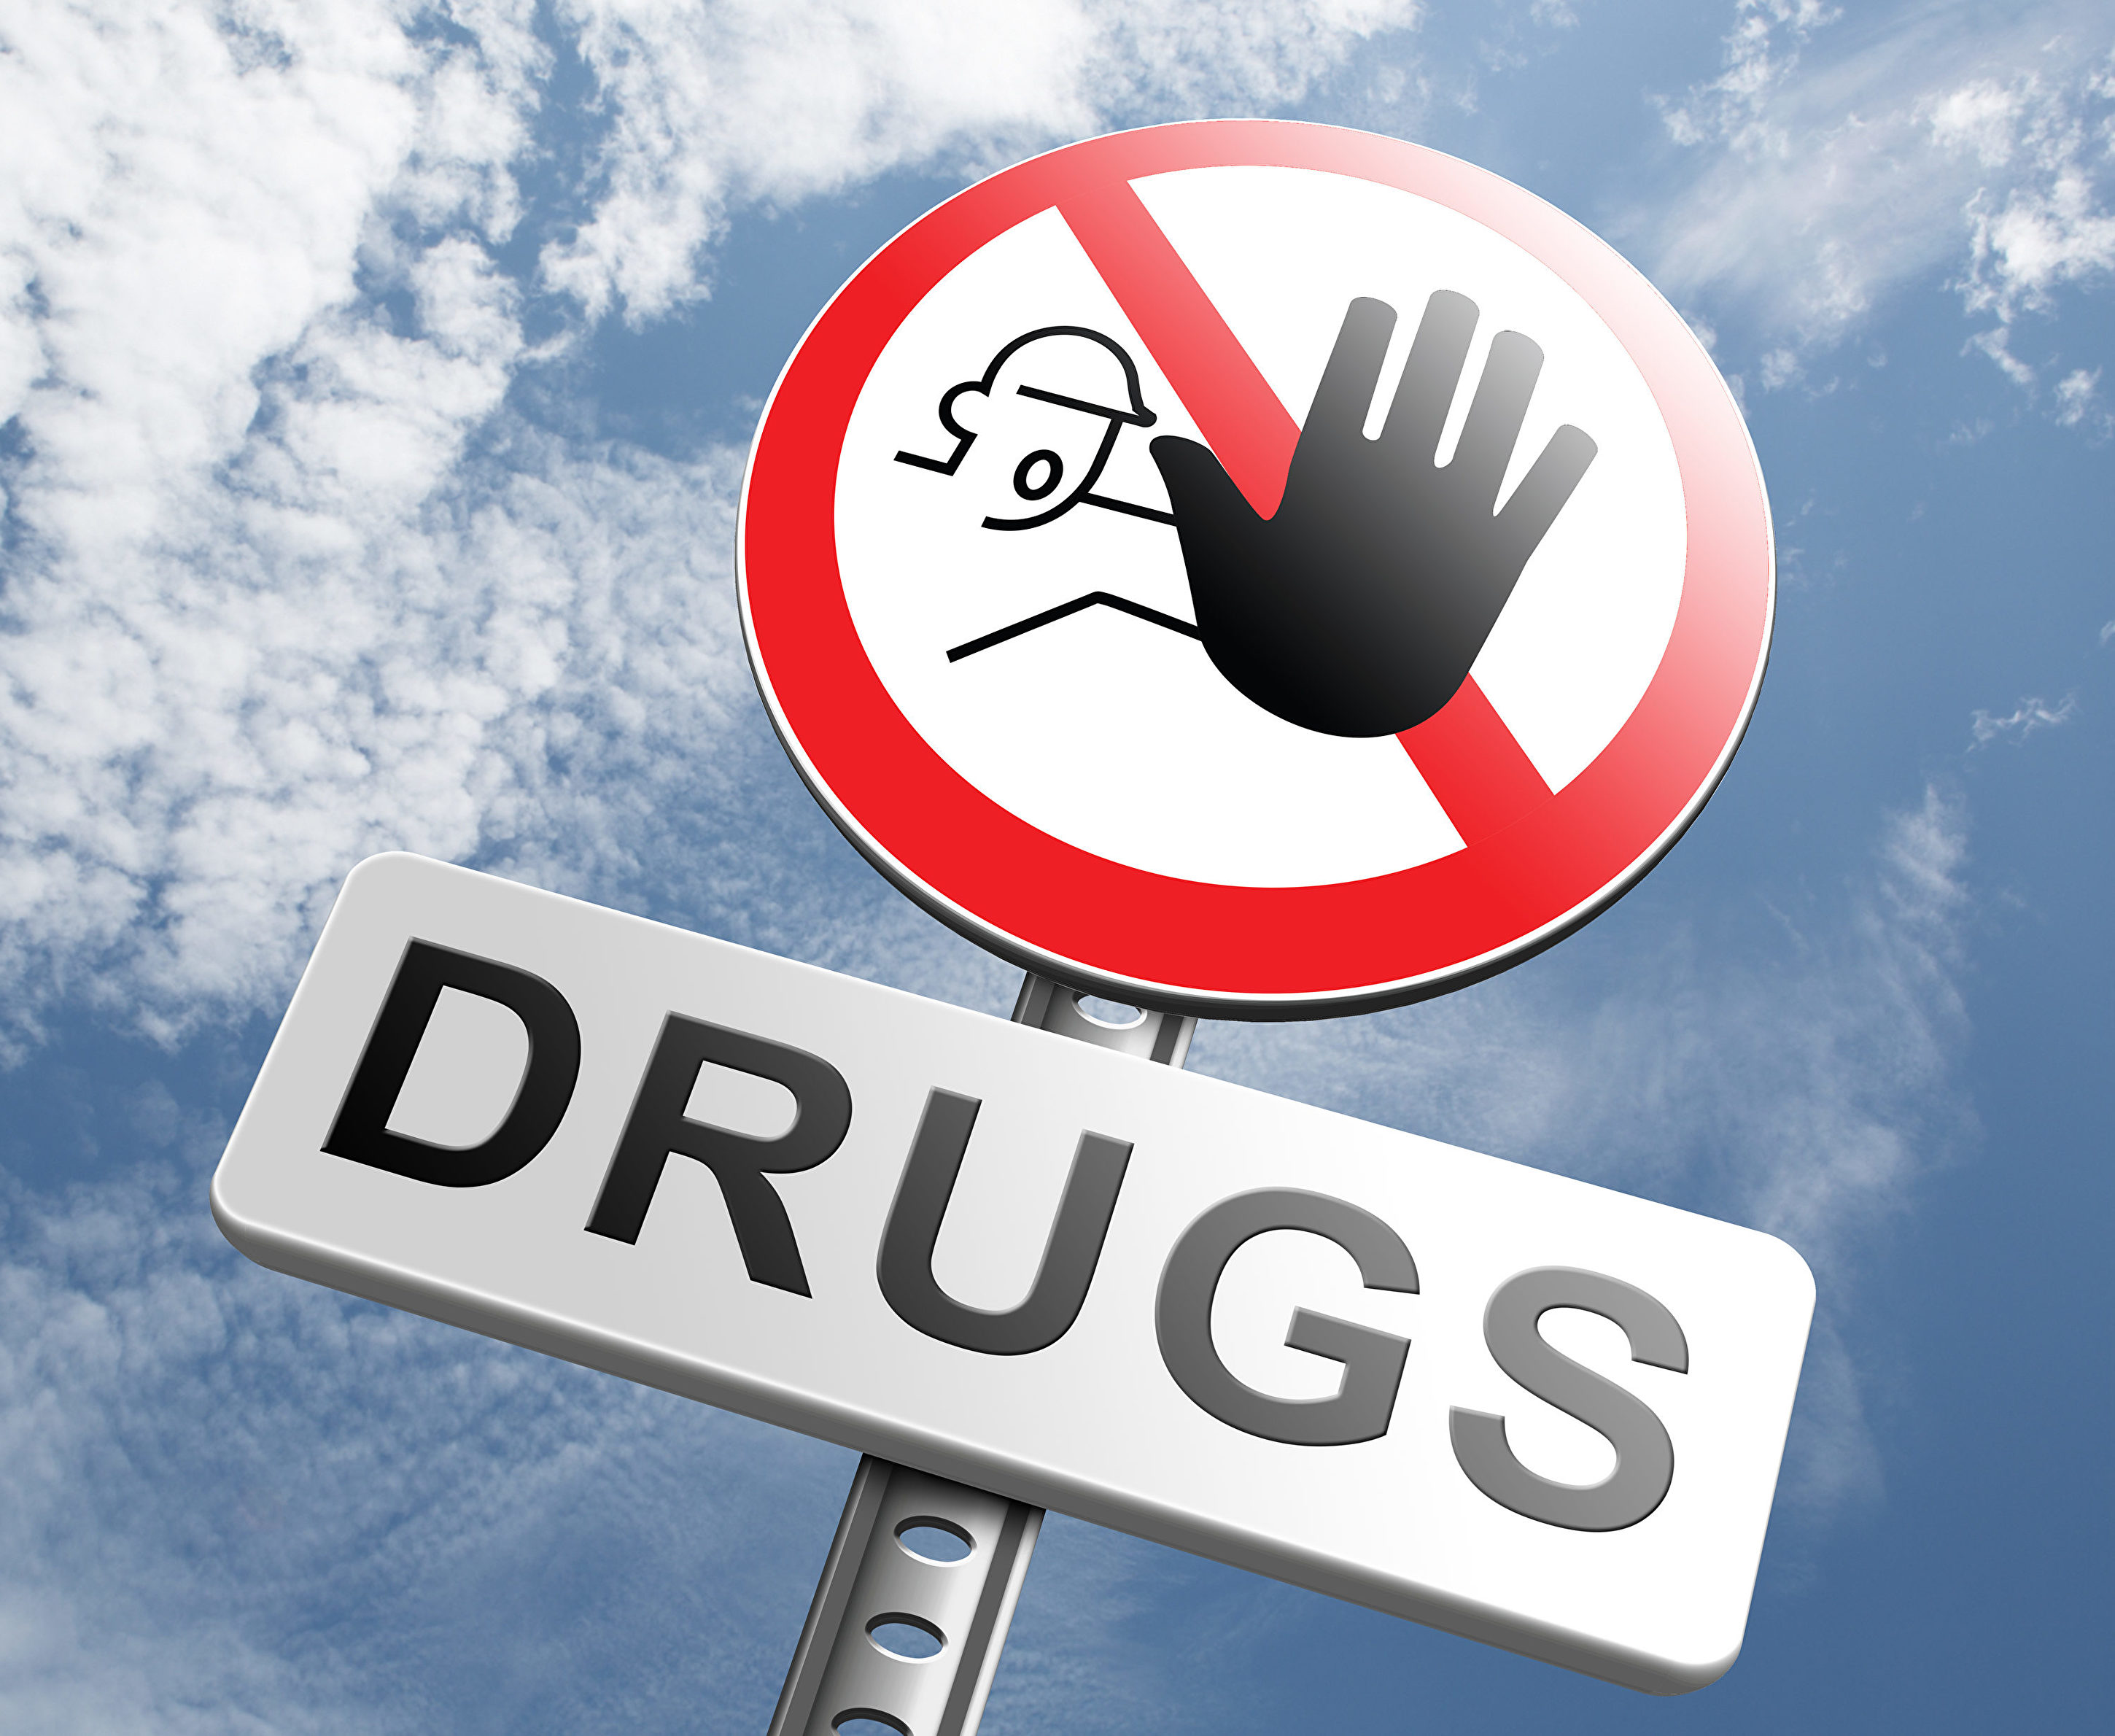 悉尼現多起阿片類毒品中毒事件 新州發警告